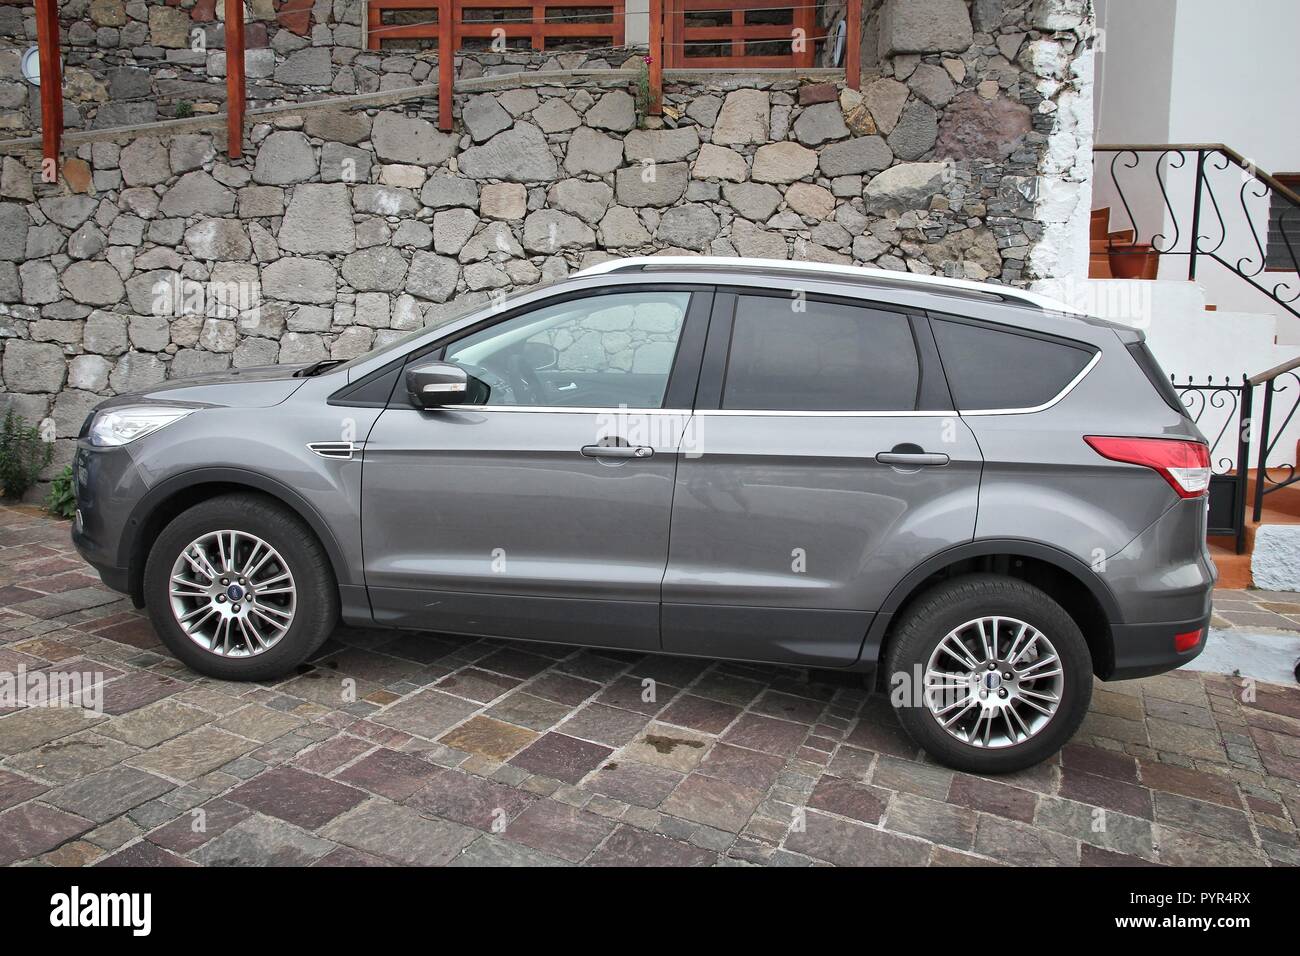 GRAN CANARIA, Spagna - 5 dicembre 2015: Ford Kuga SUV compatto auto parcheggiate in Gran Canaria, Spagna. Ci sono 593 automobili pro capite in Spagna. Foto Stock